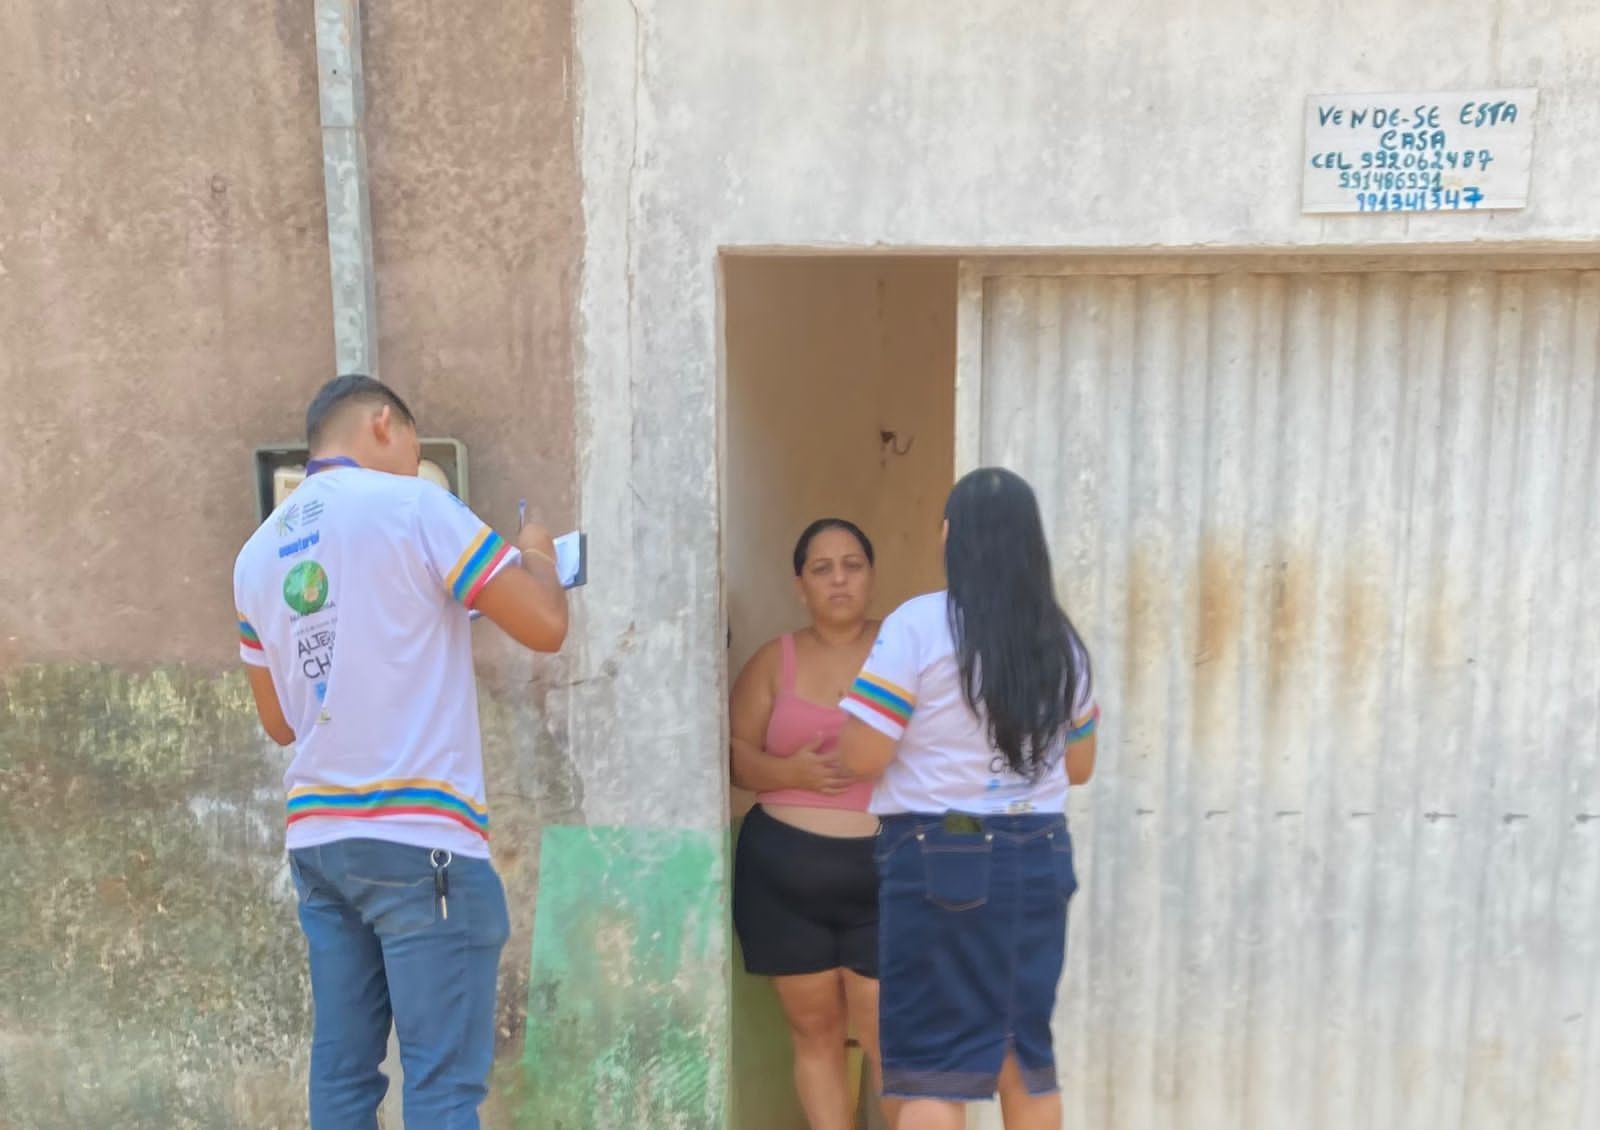 Distribuidora de energia faz busca ativa de clientes aptos ao cadastro da Tarifa Social em Santarém